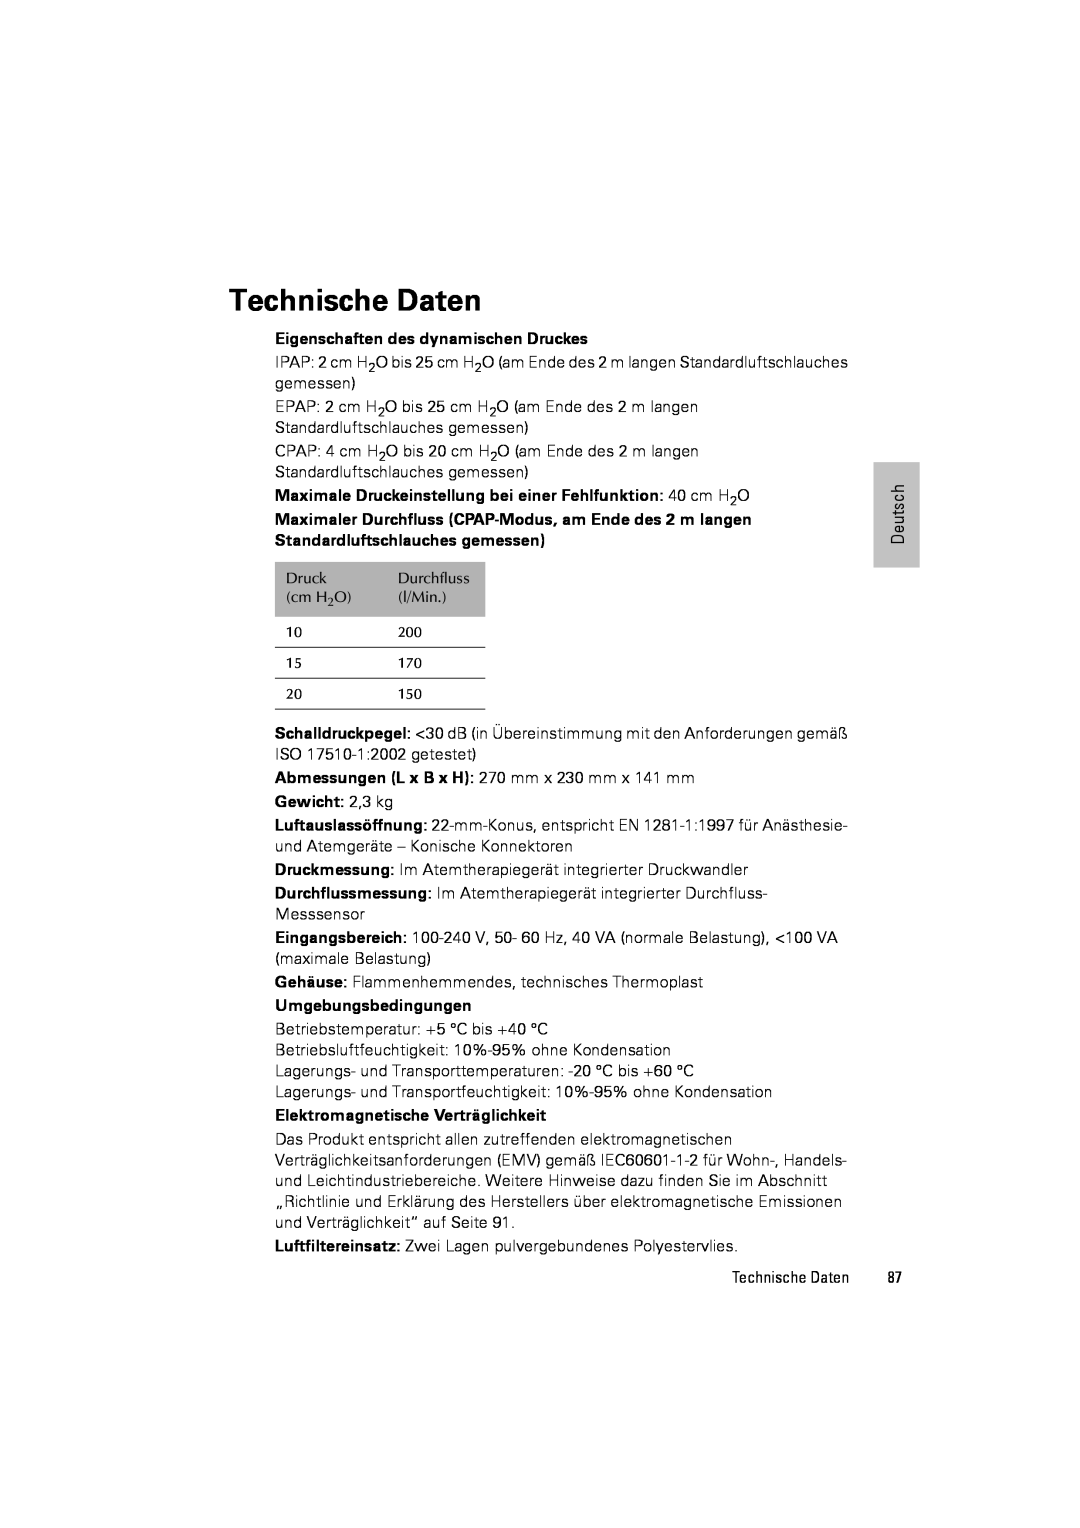 ResMed III & III ST user manual Technische Daten, Eigenschaften des dynamischen Druckes, Gewicht: 2,3 kg 